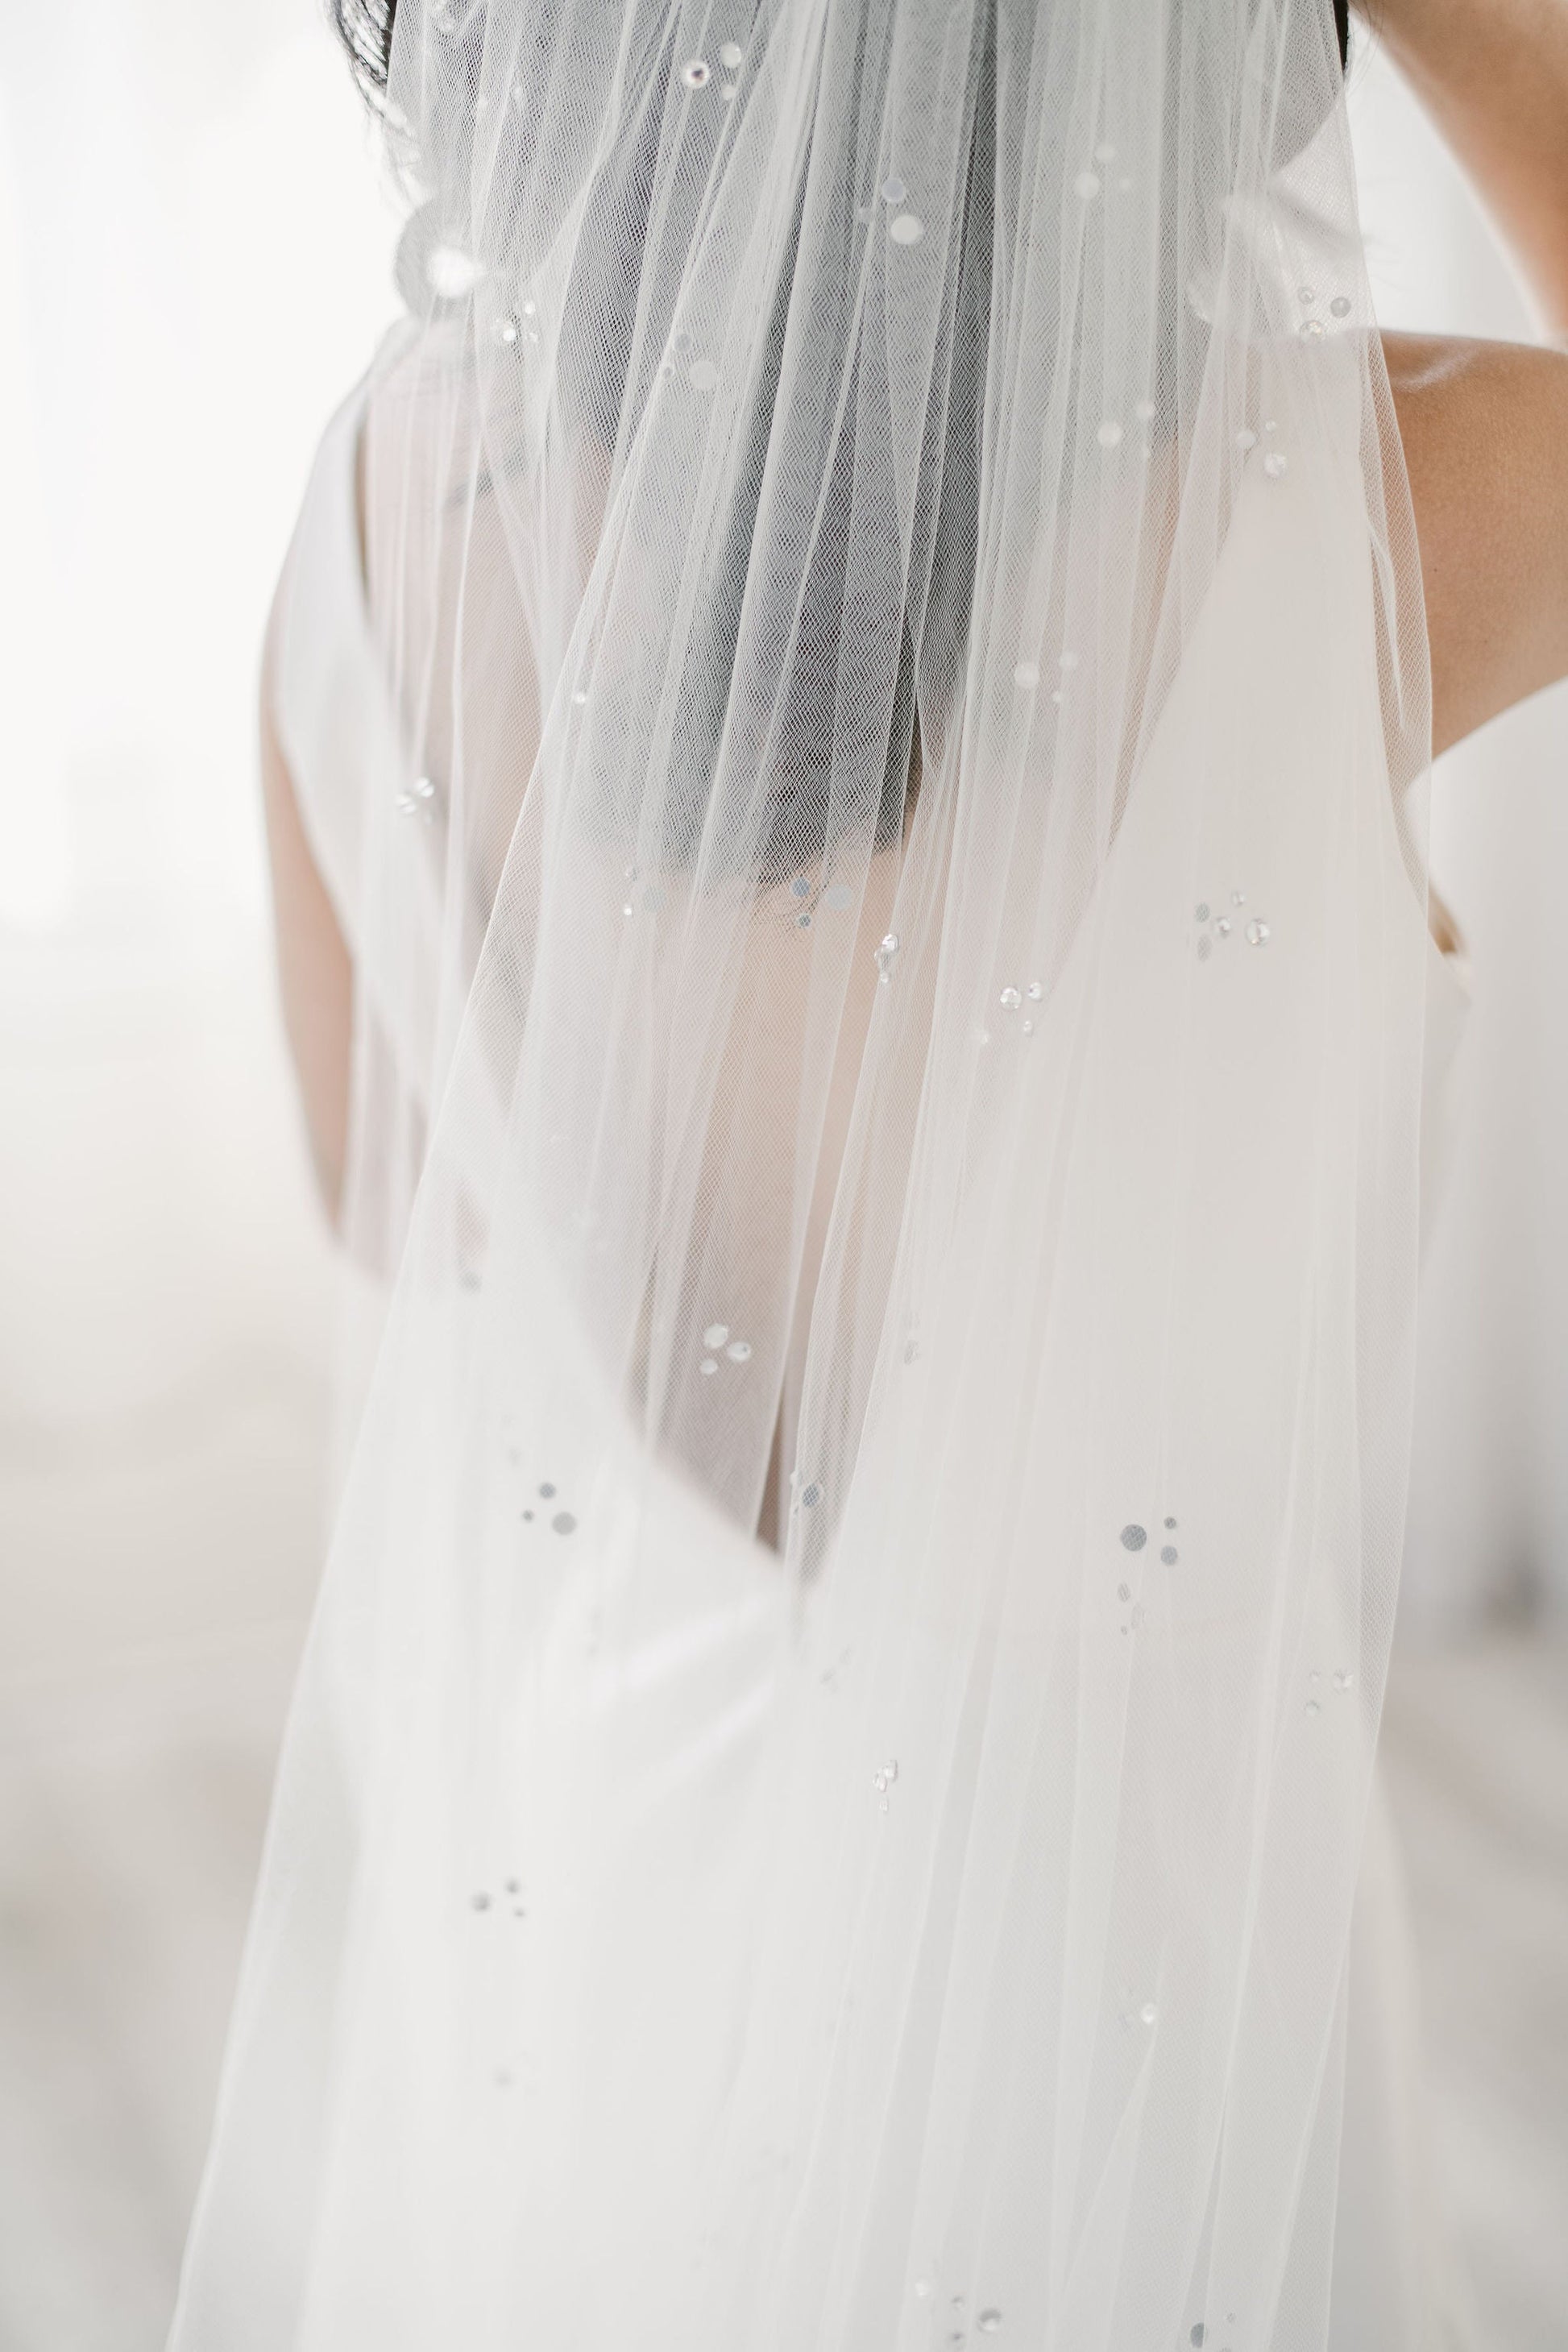 custom wedding veils pearl veils crystal veils